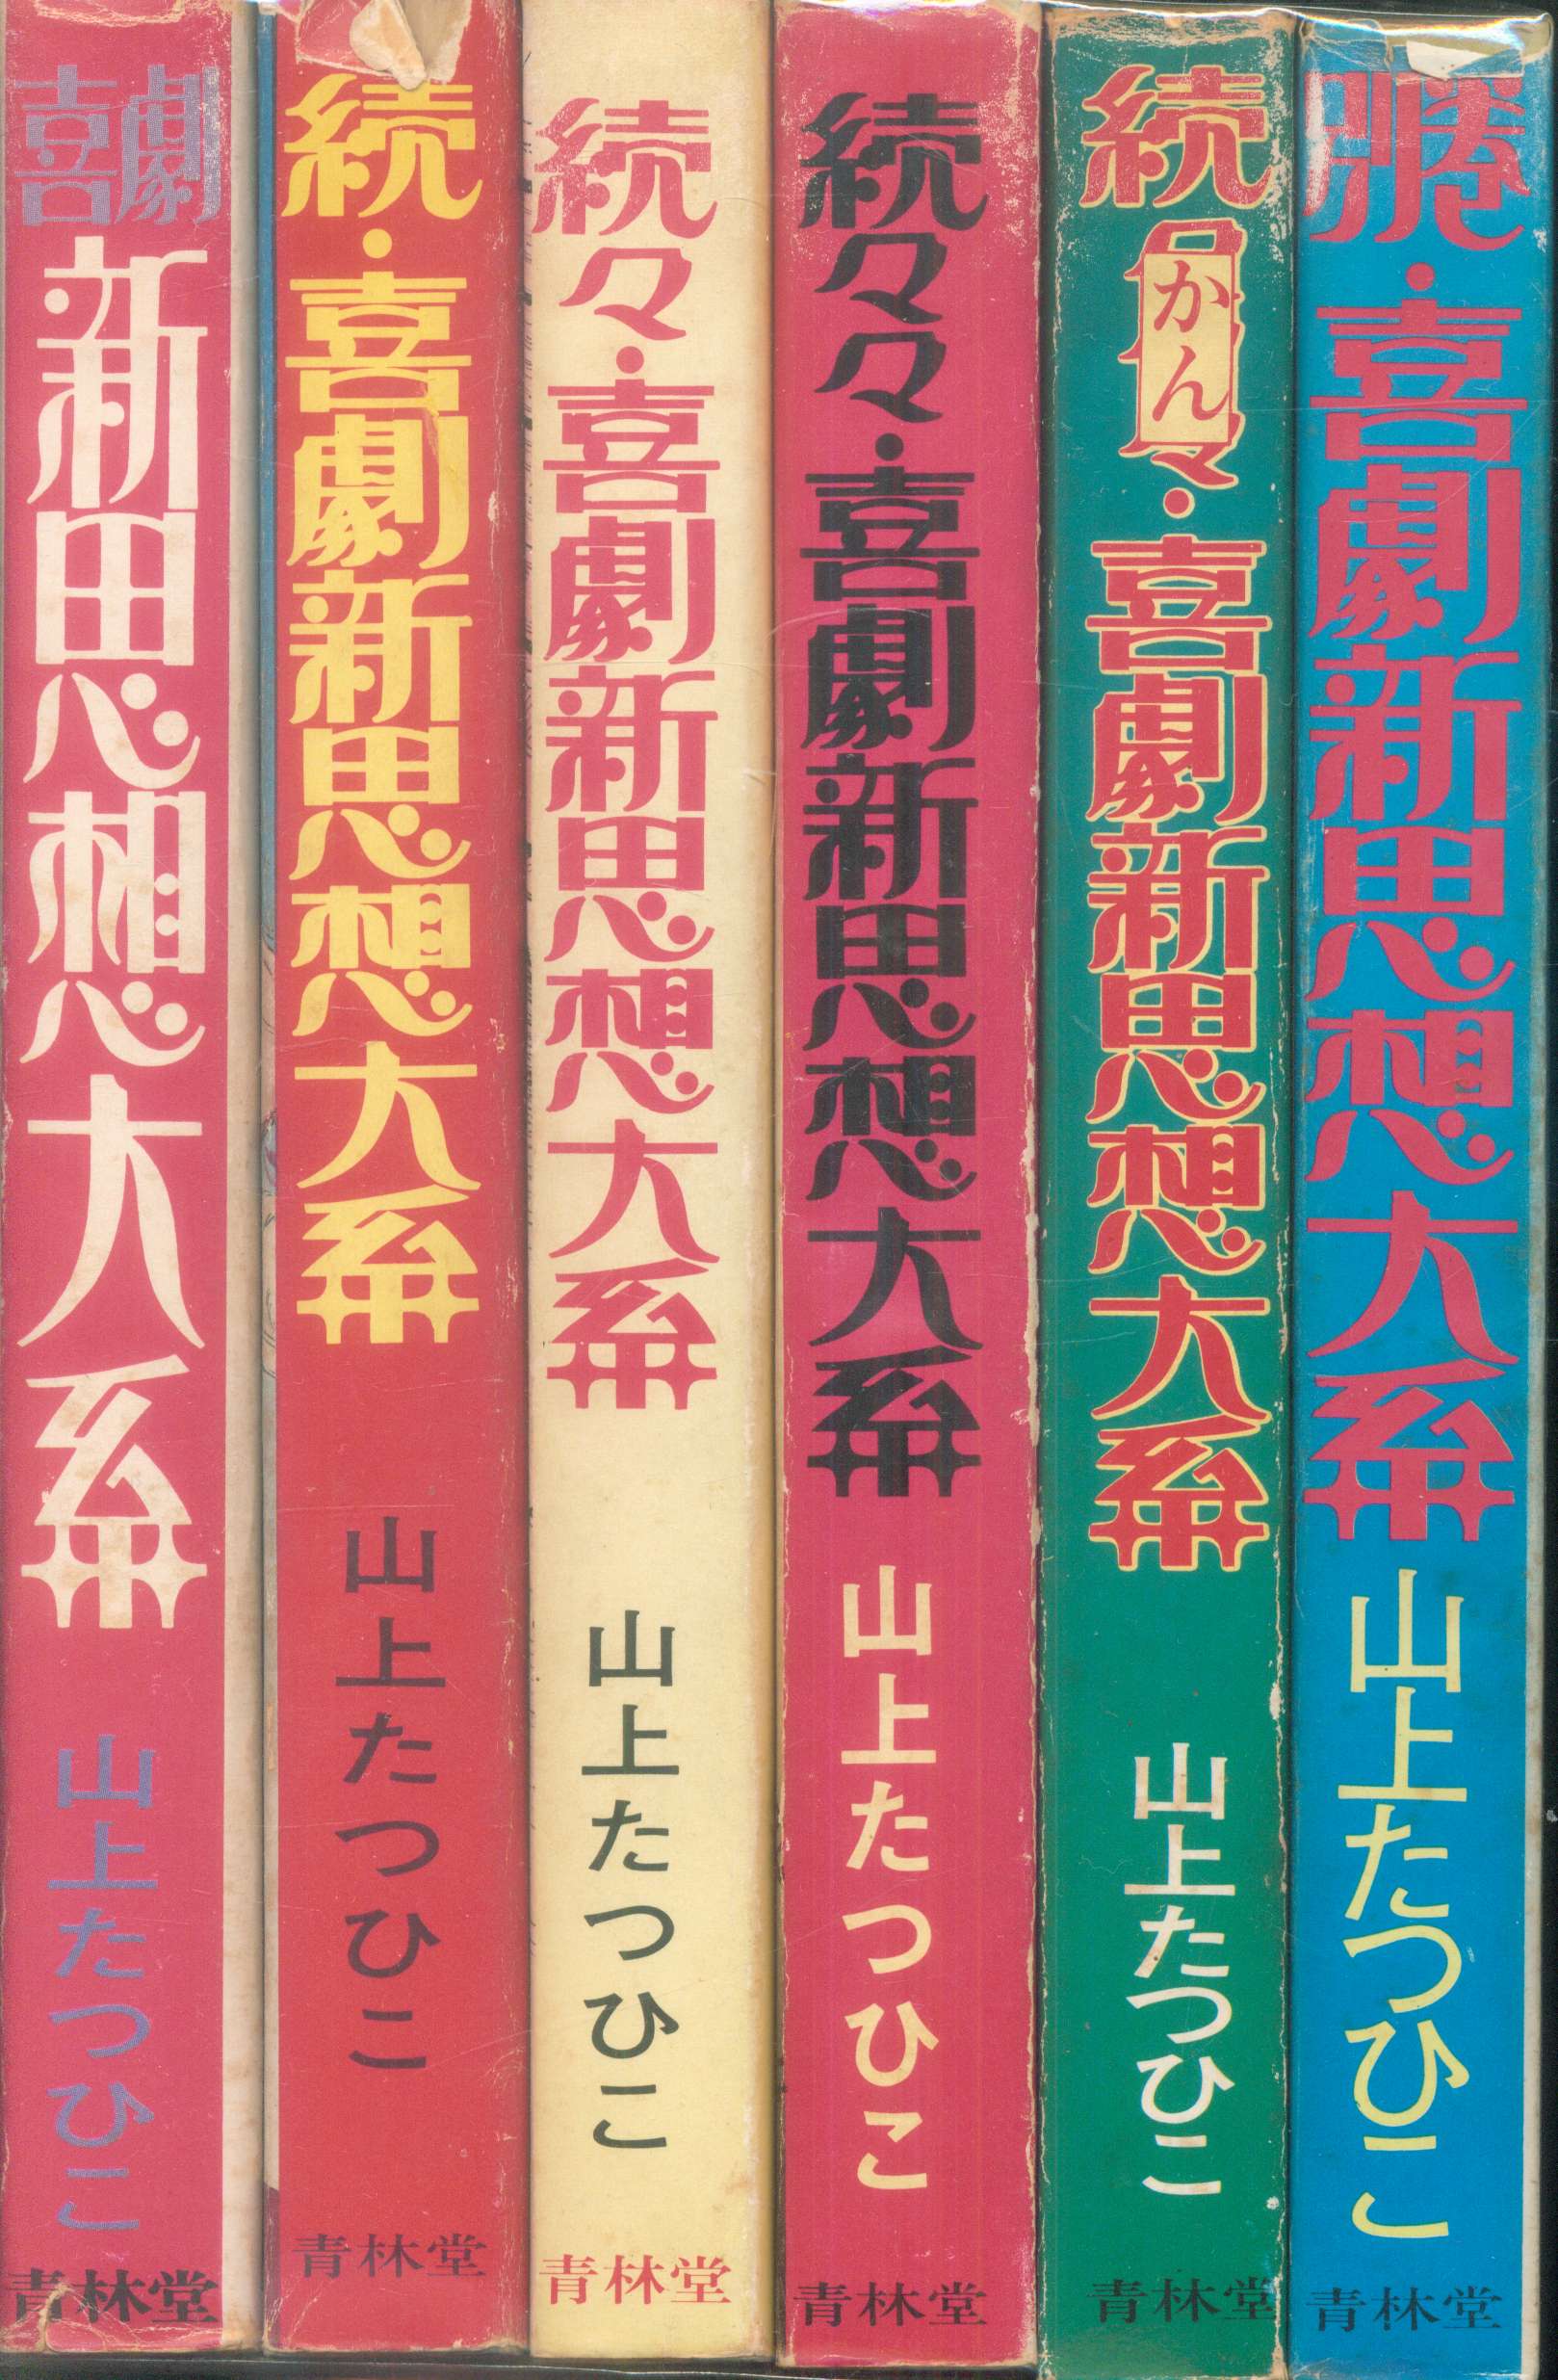 青林堂 現代漫画家自選シリーズ 山上たつひこ 喜劇新思想体系 全6巻